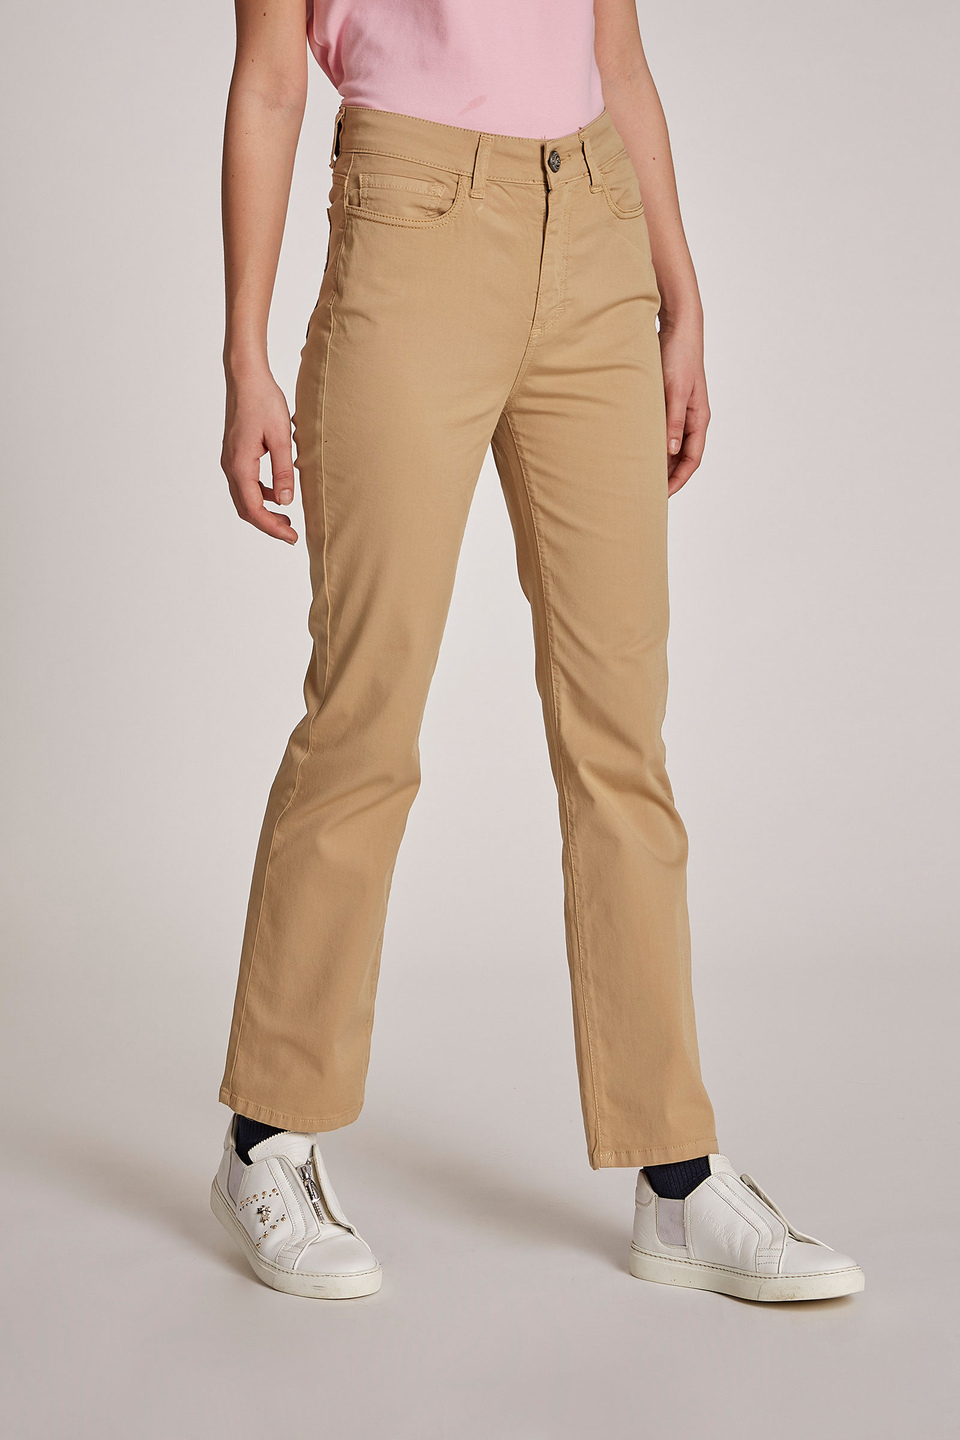 Pantalon femme en coton stretch, cinq poches et coupe classique | La Martina - Official Online Shop